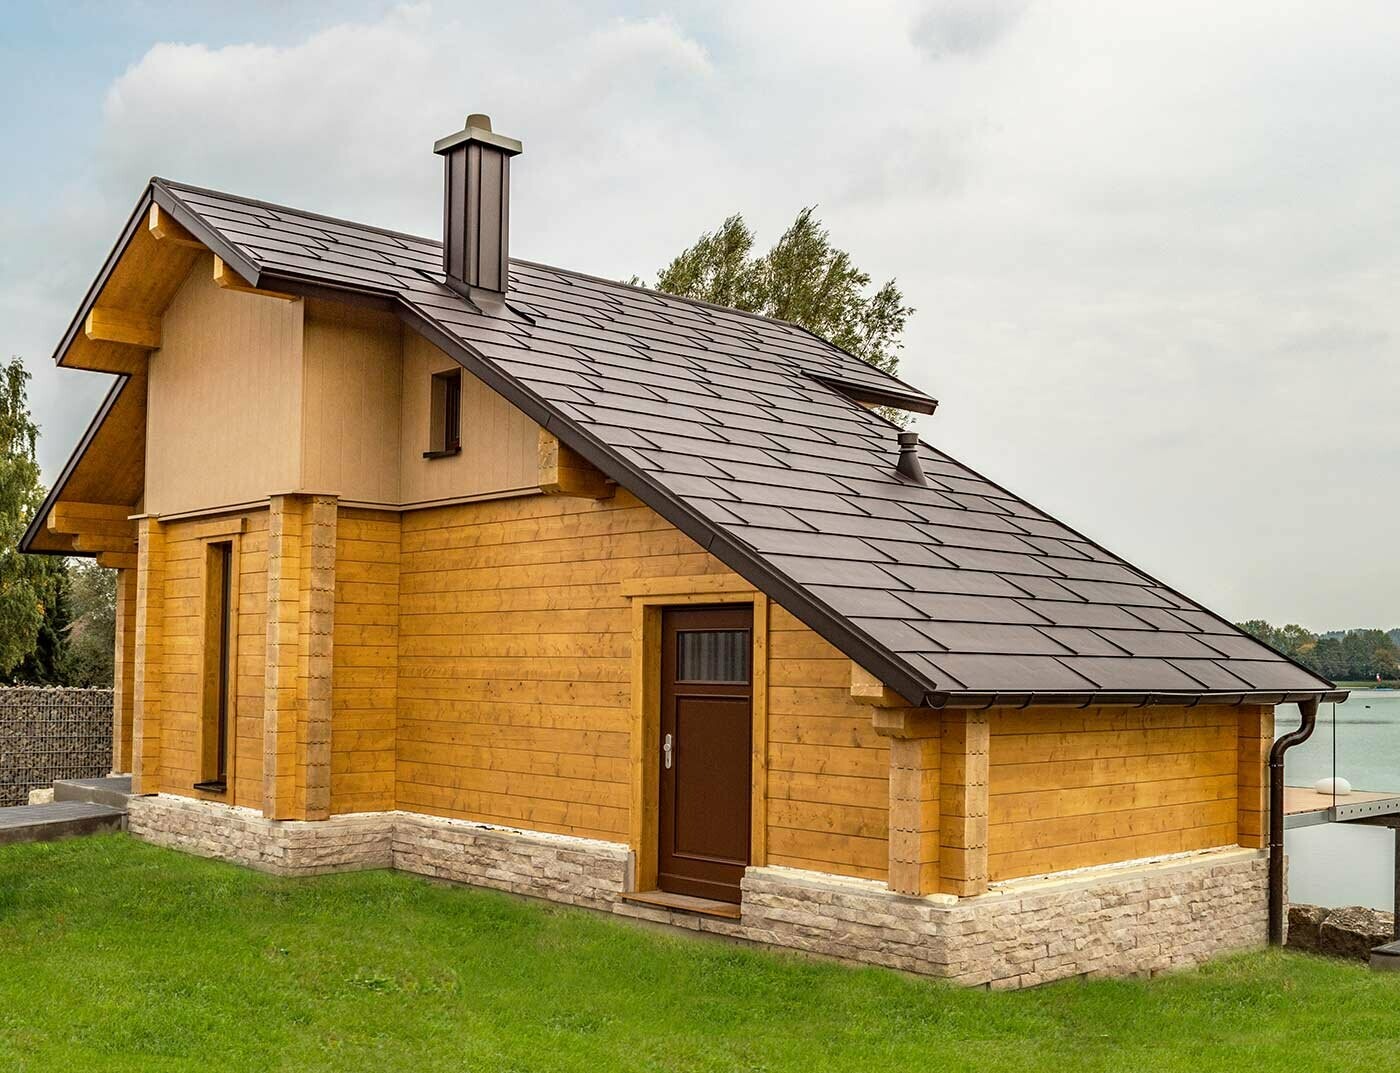 Maison au bord de l’eau recouverte de panneaux de toiture FX.12 PREFA couleur brun noisette ainsi que d’une façade couleurs brun sable et bois.